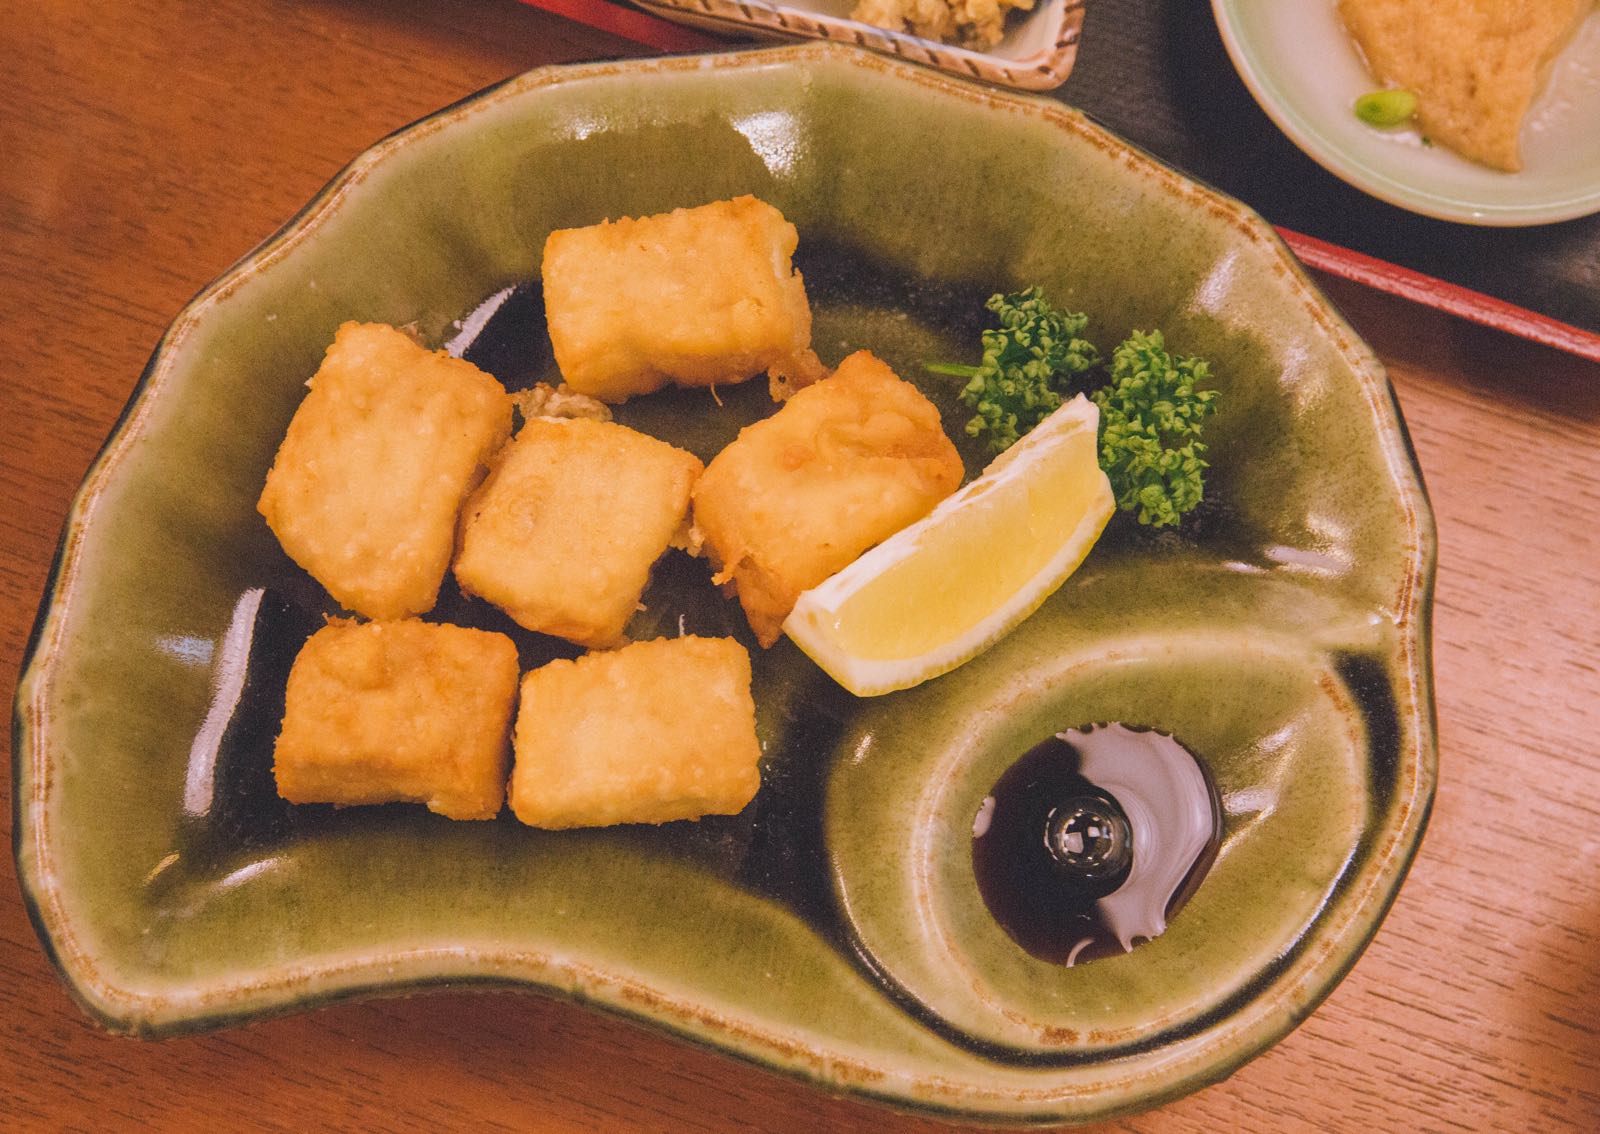 午餐是在京都的最后一餐，豆雅传豆腐料理，一楼是售卖豆制品的商铺，二楼供